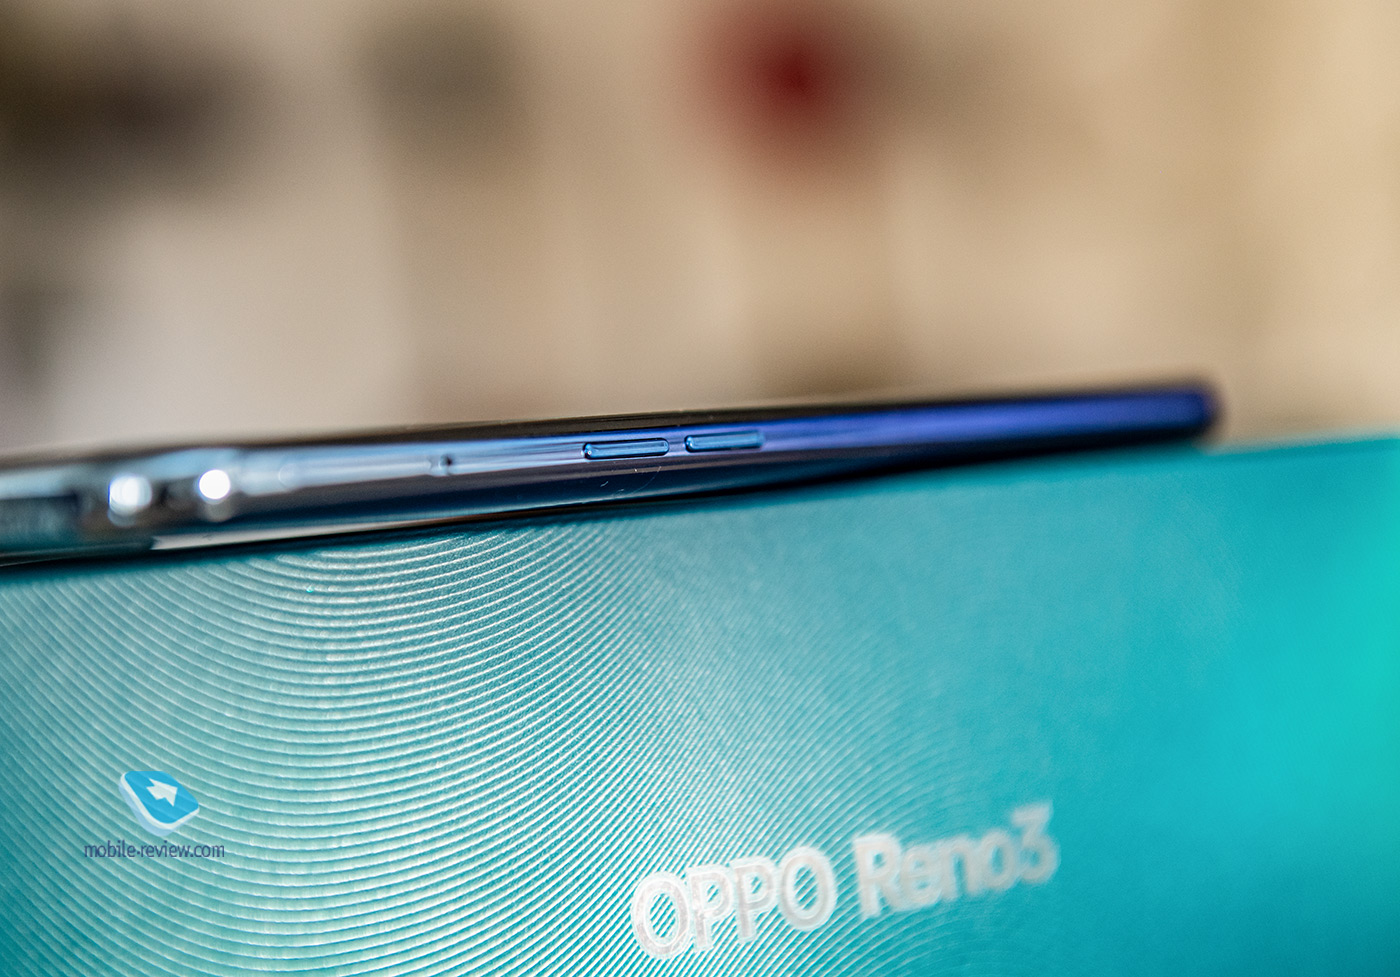 Обзор смартфона Oppo Reno3 (CPH2043)